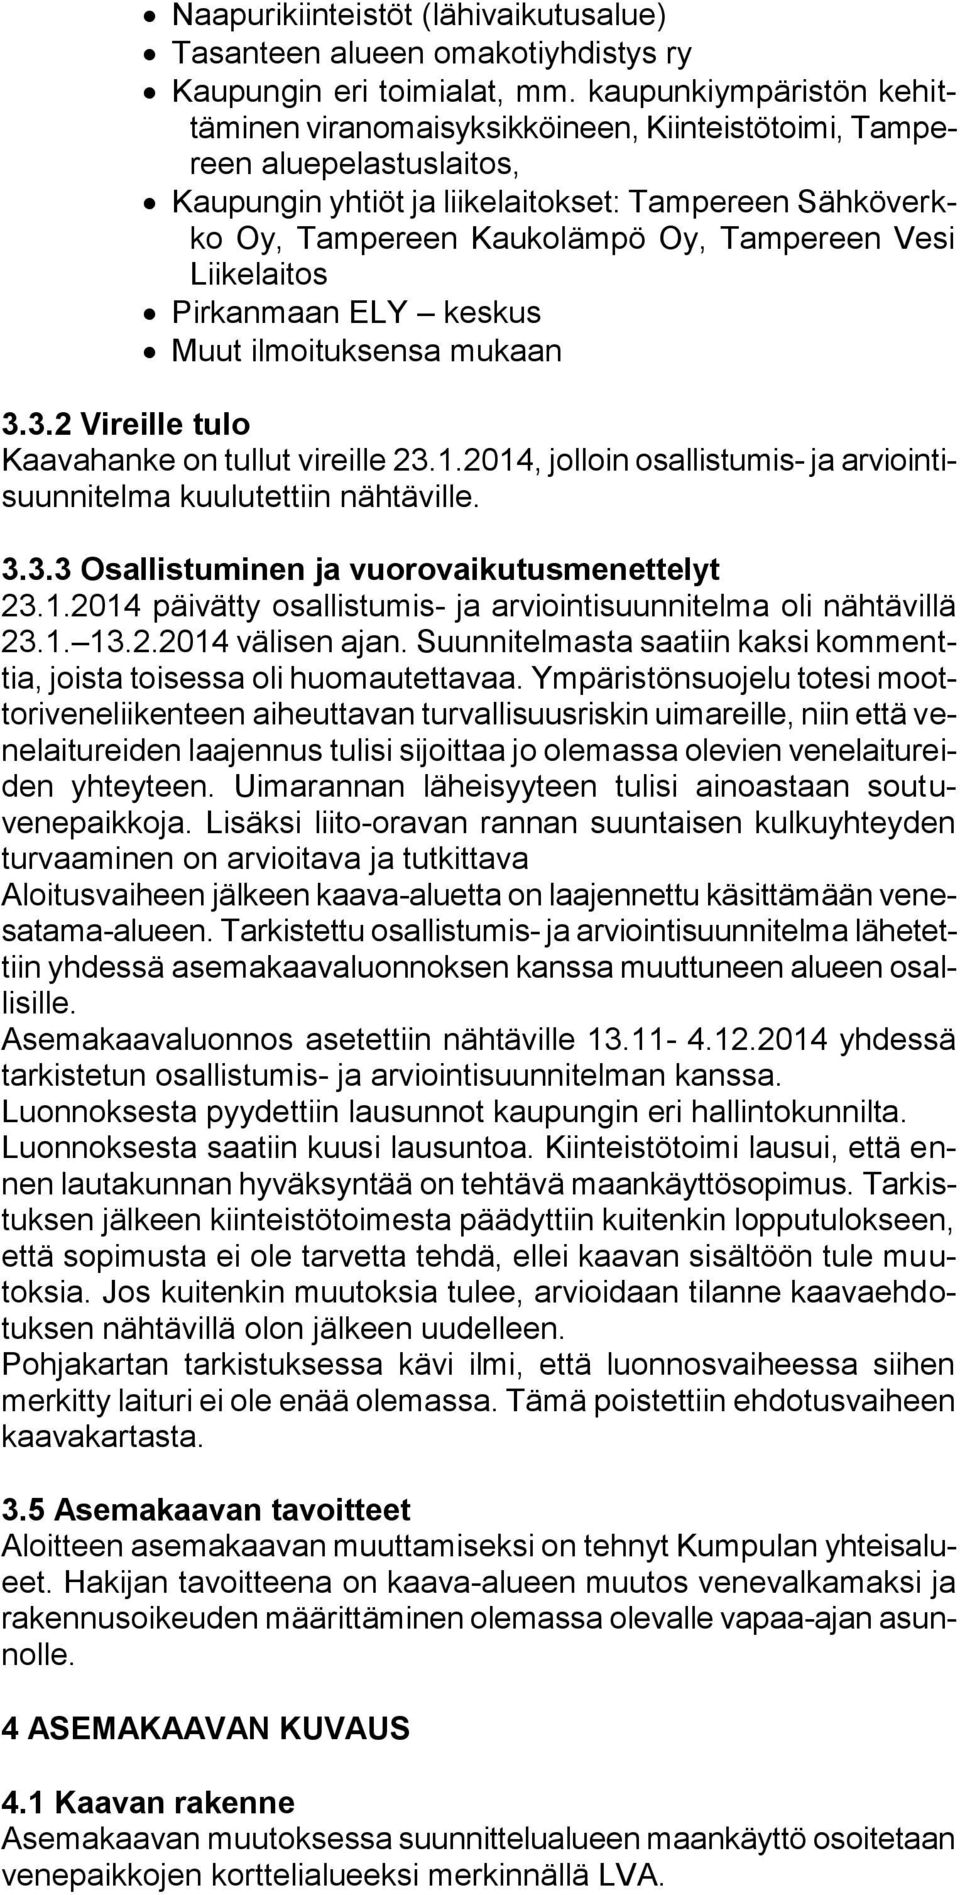 Vesi Liikelaitos Pirkanmaan ELY keskus Muut ilmoituksensa mukaan 3.3.2 Vireille tulo Kaavahanke on tullut vireille 23.1.2014, jolloin osallistumis- ja arviointisuunnitelma kuulutettiin nähtäville. 3.3.3 Osallistuminen ja vuorovaikutusmenettelyt 23.